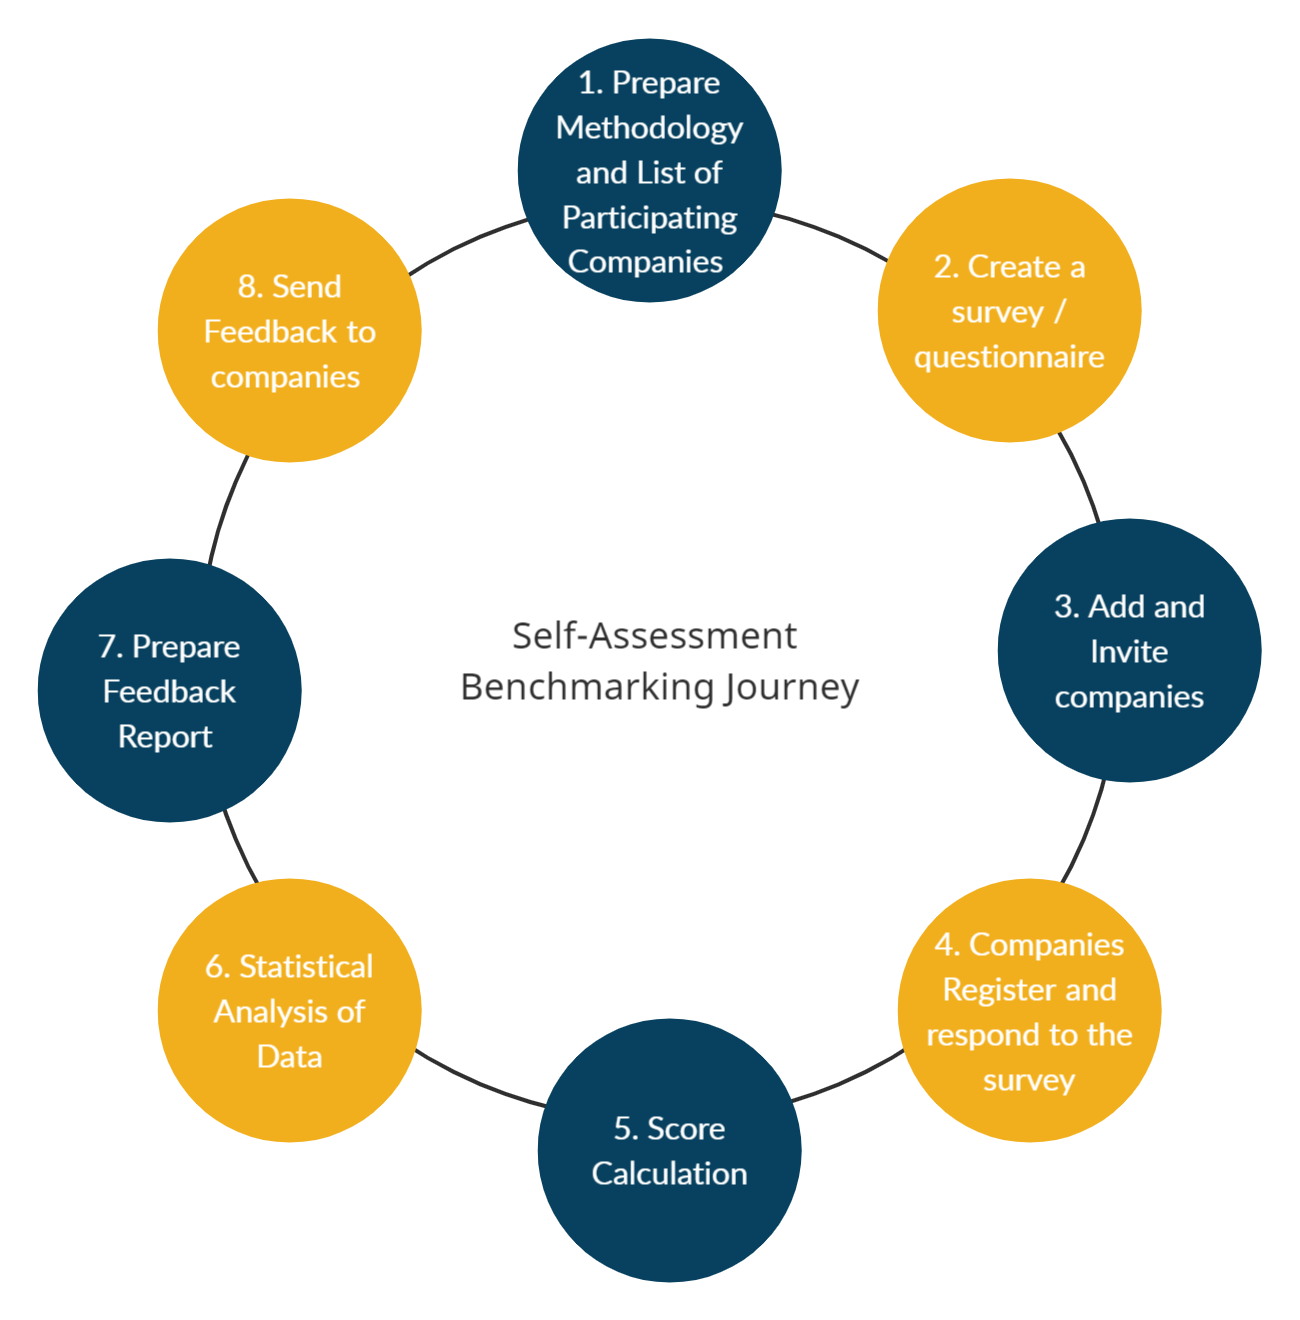 Self-Assessment Journey